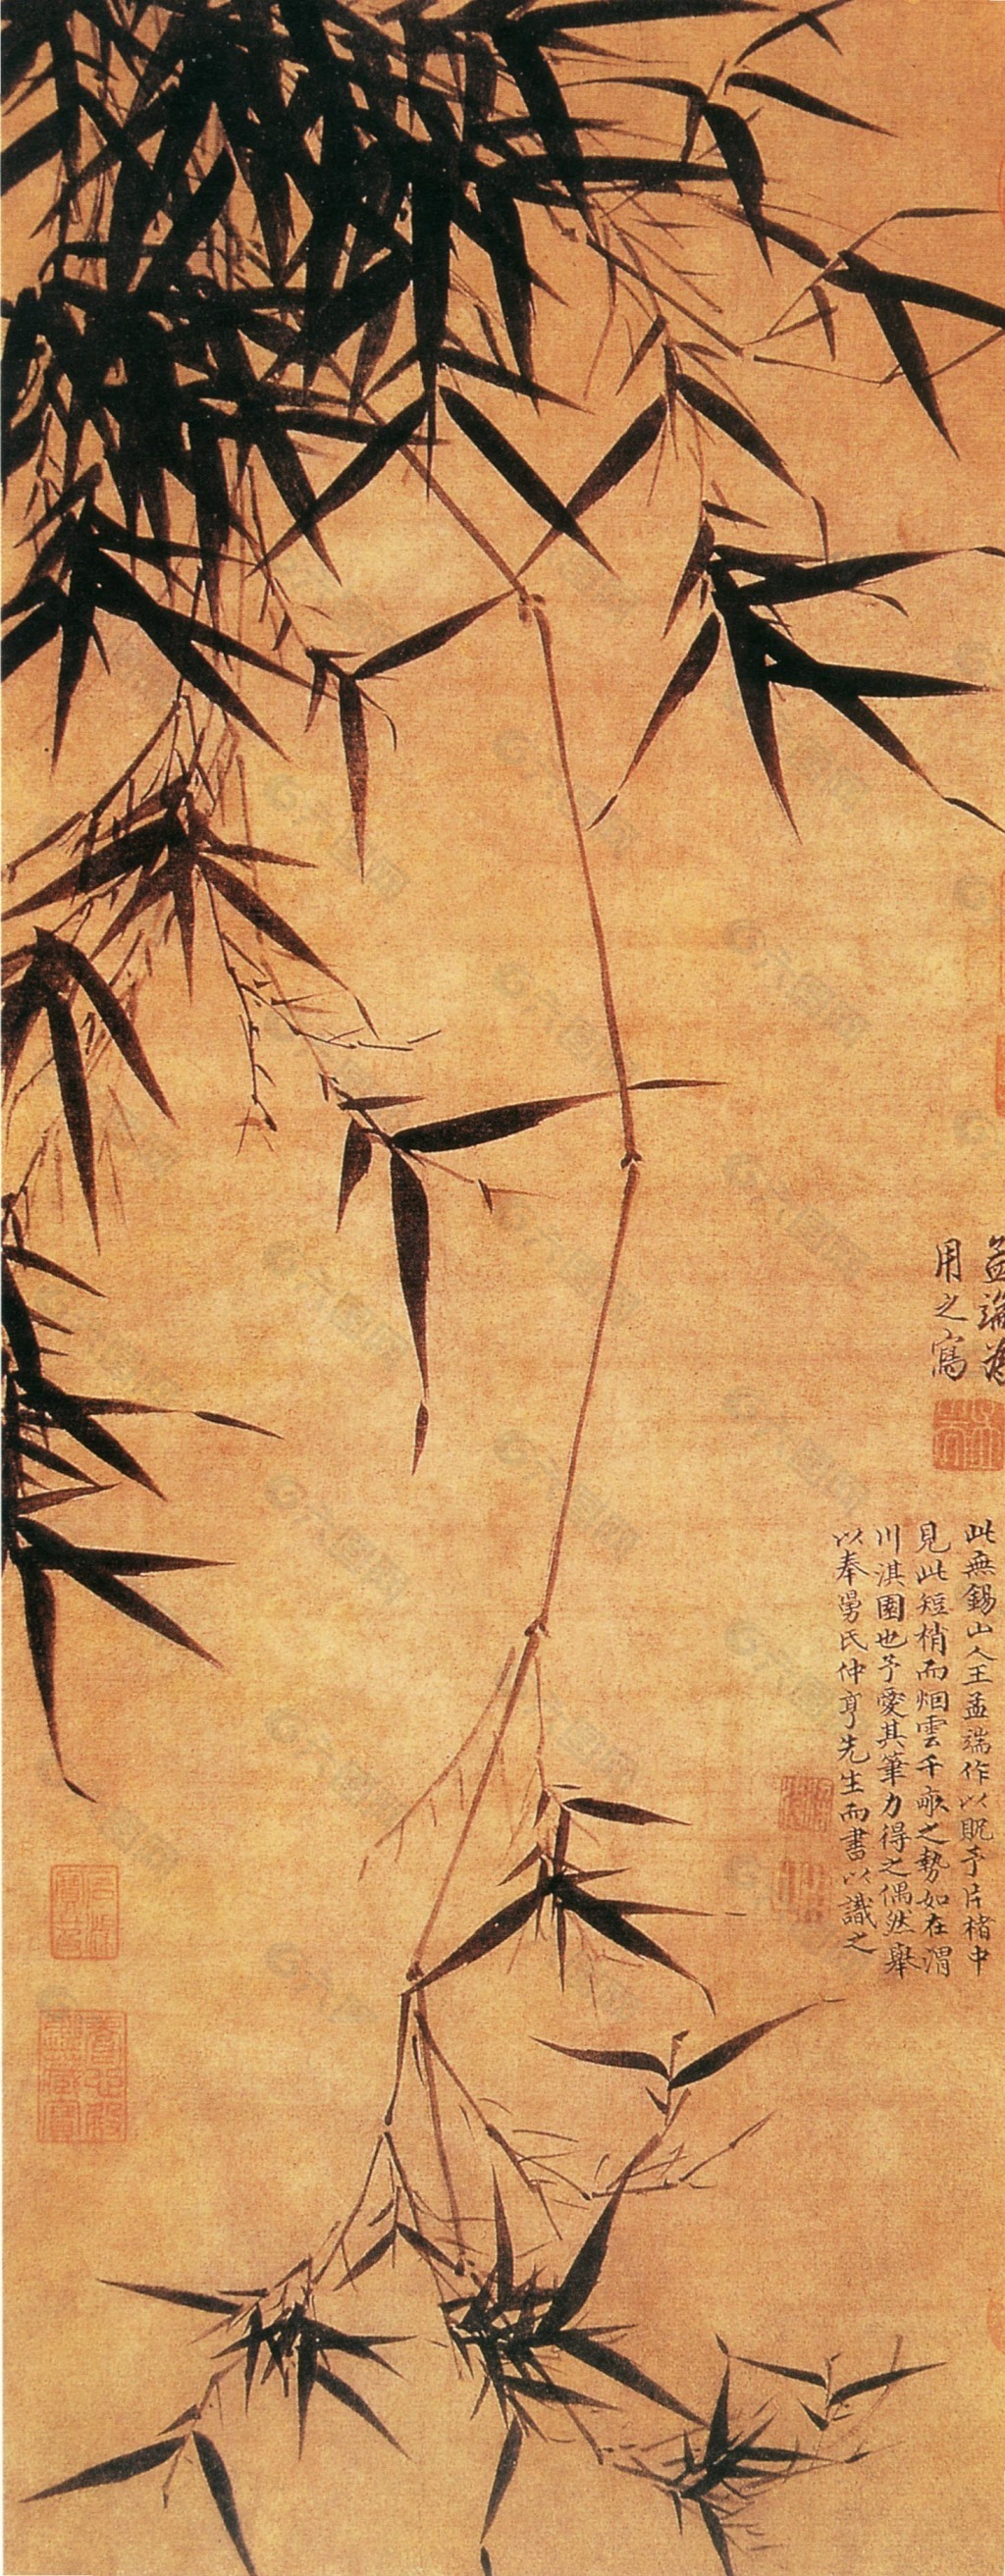 中国十大竹子明画图片